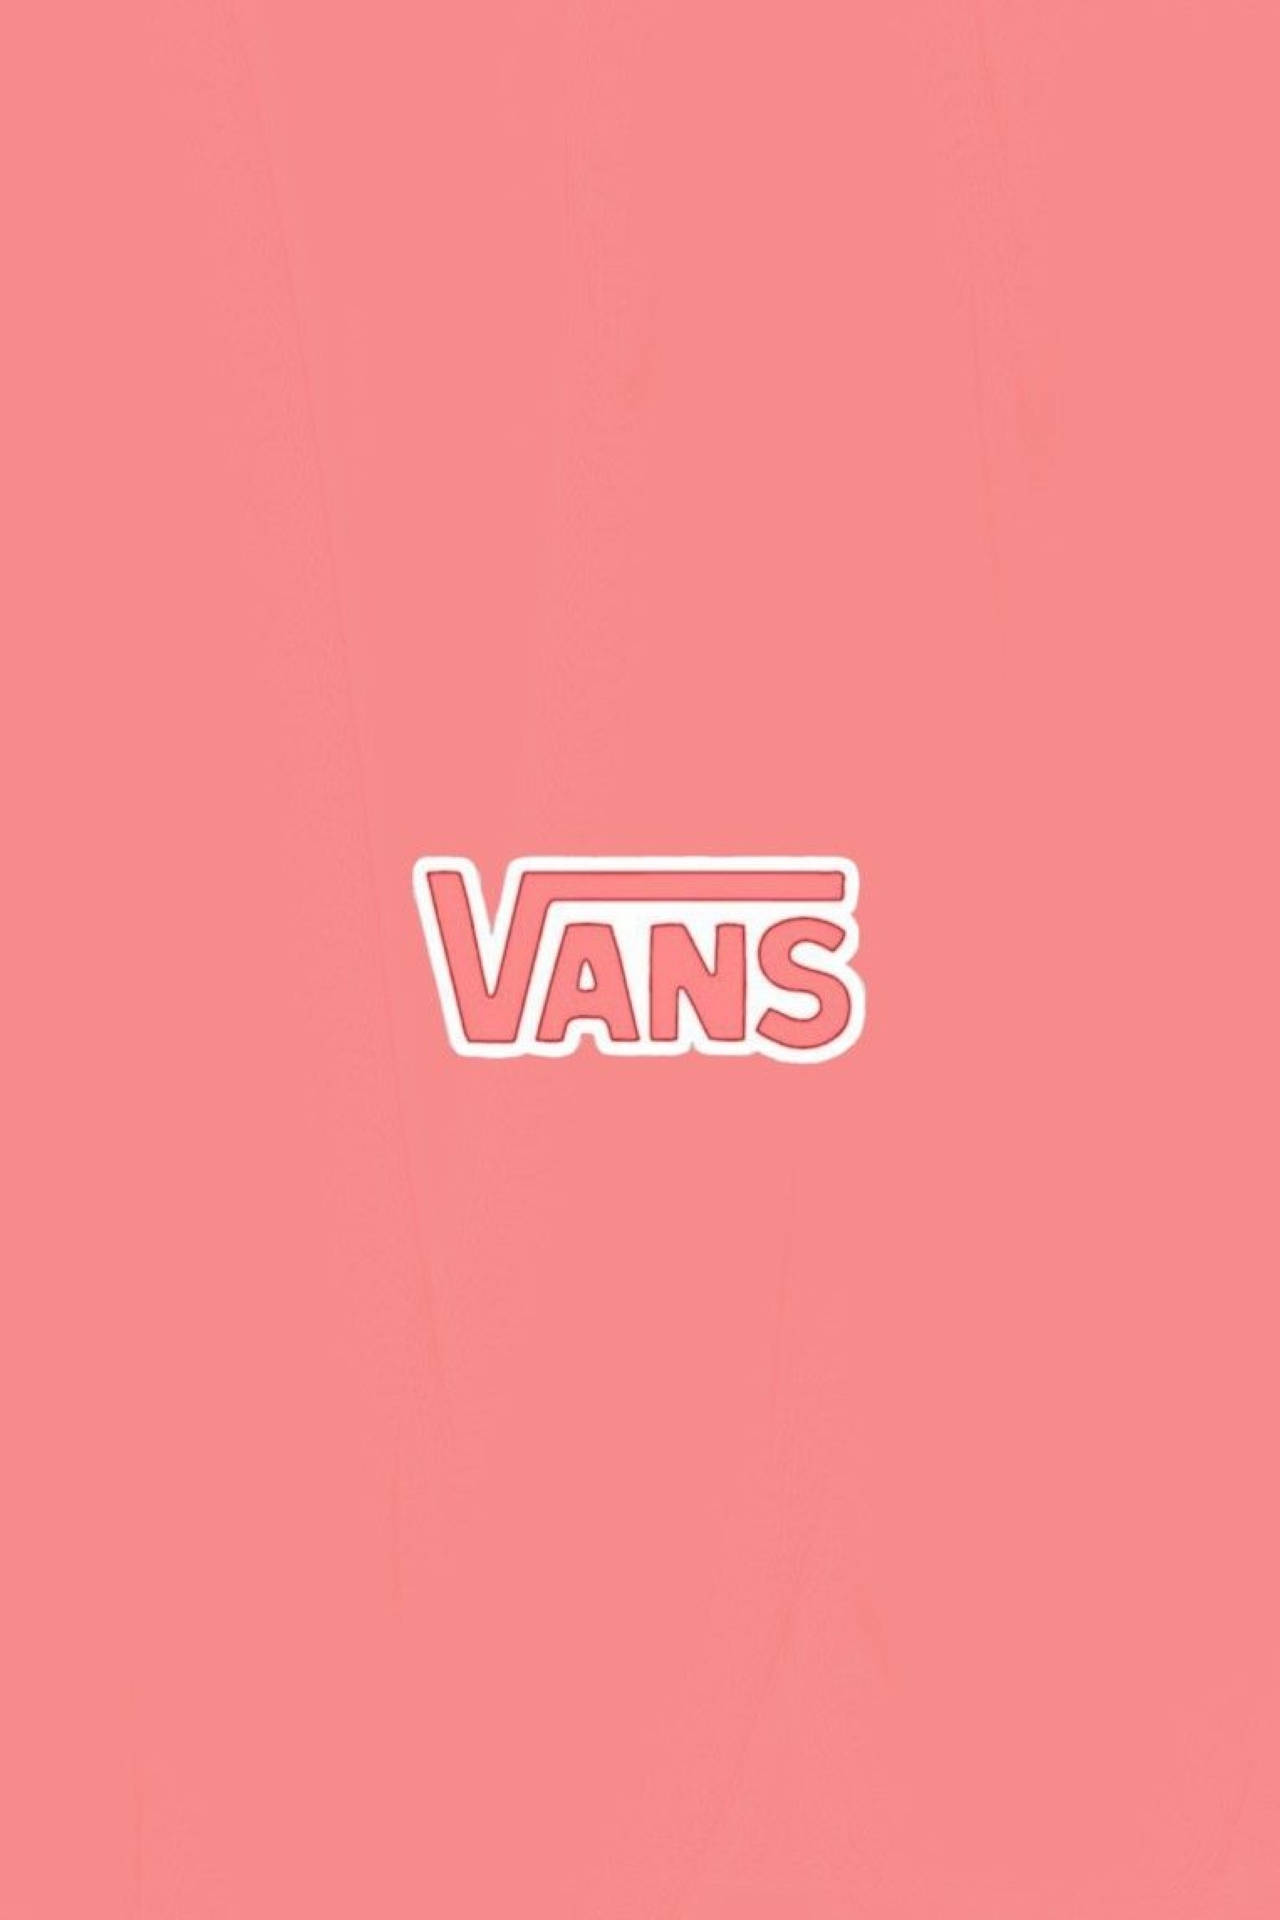 Download Pink Vans Logo Wallpaper | Wallpapers.com